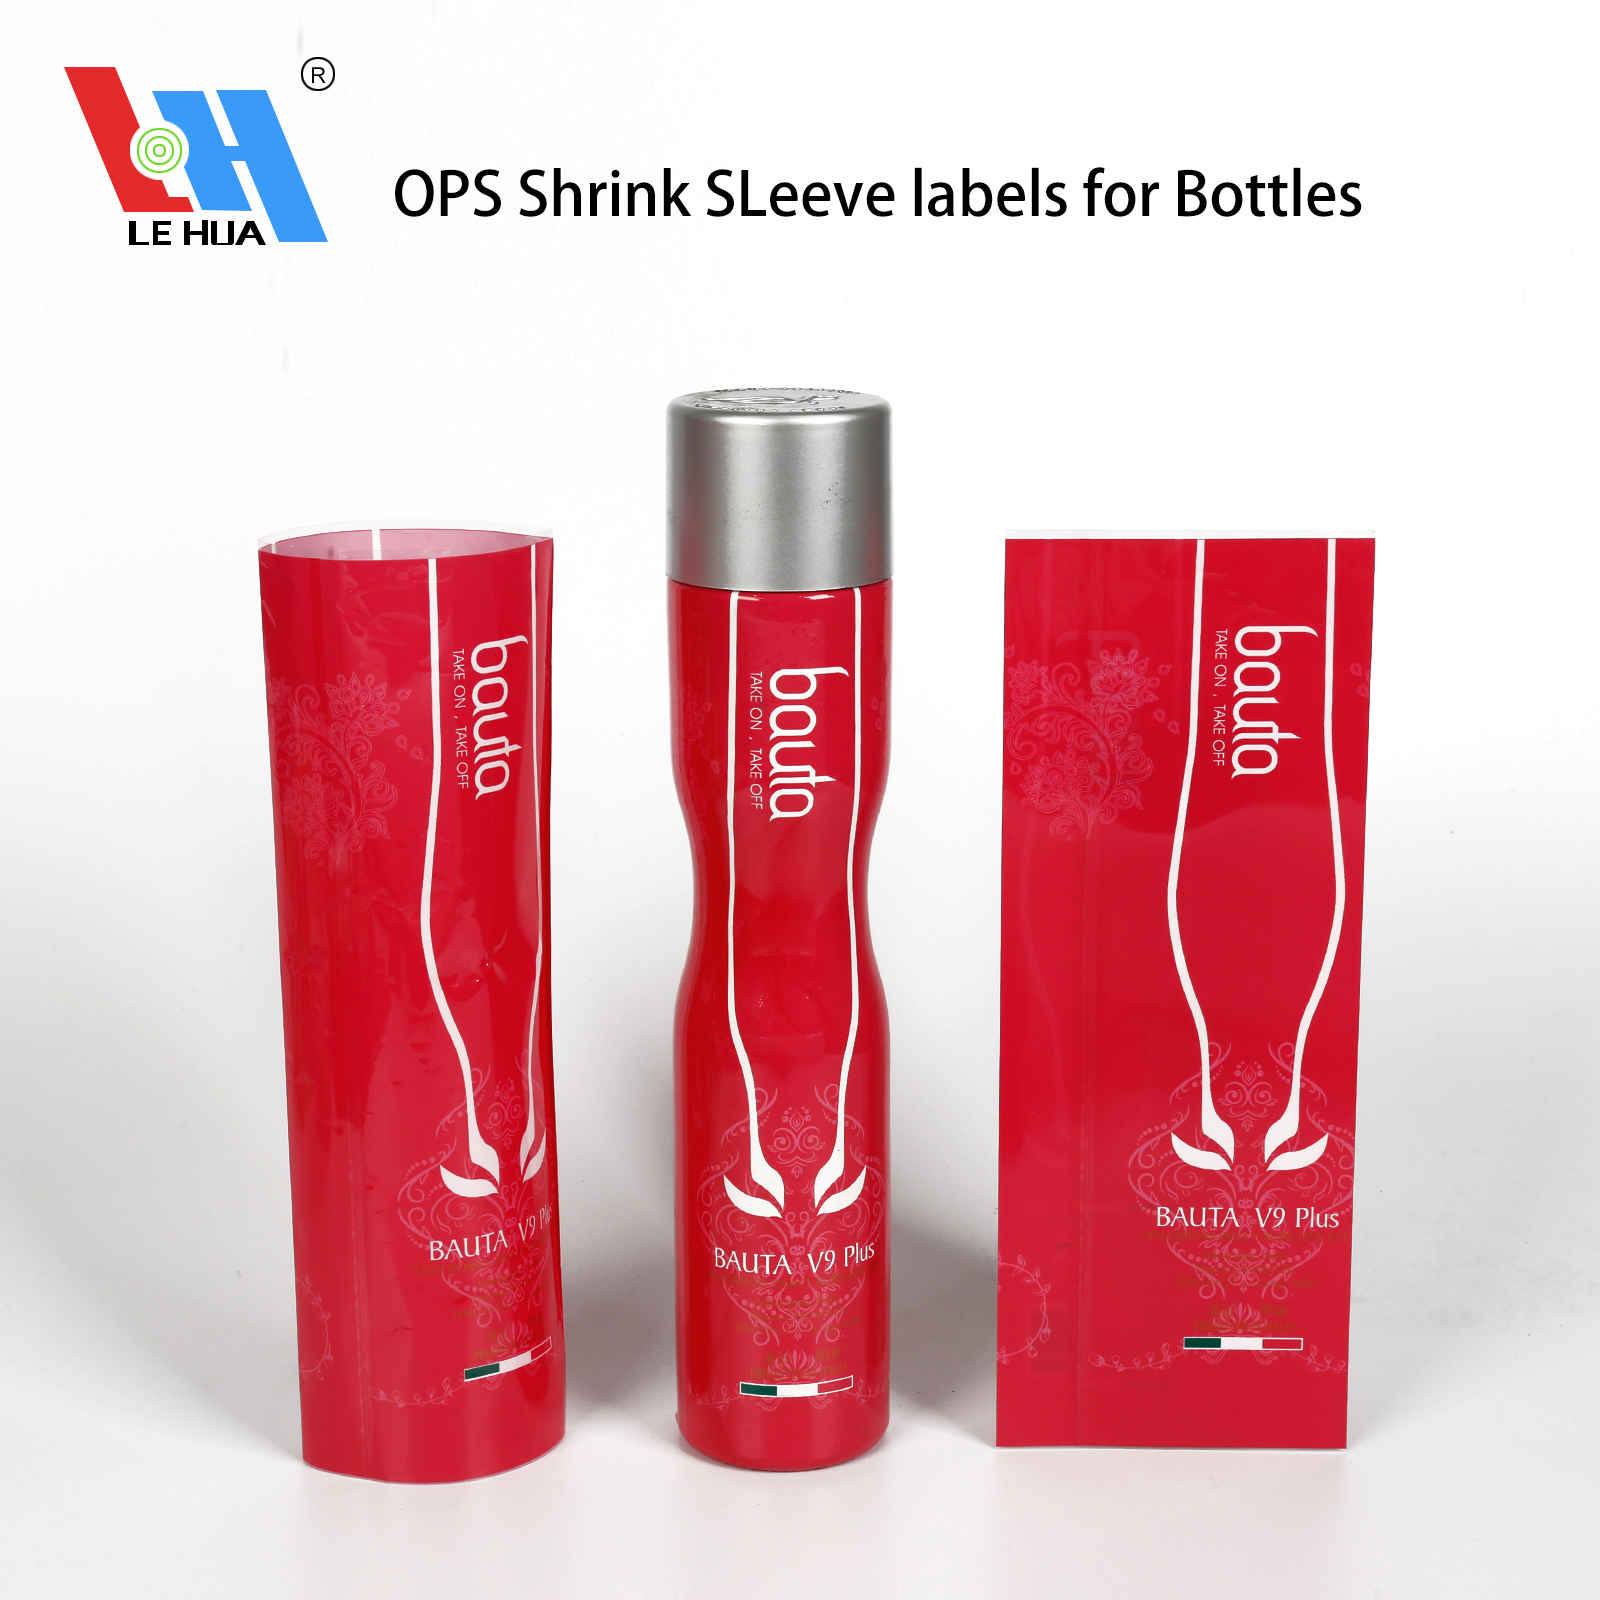 OPS Shrink sleeve labels for bottles